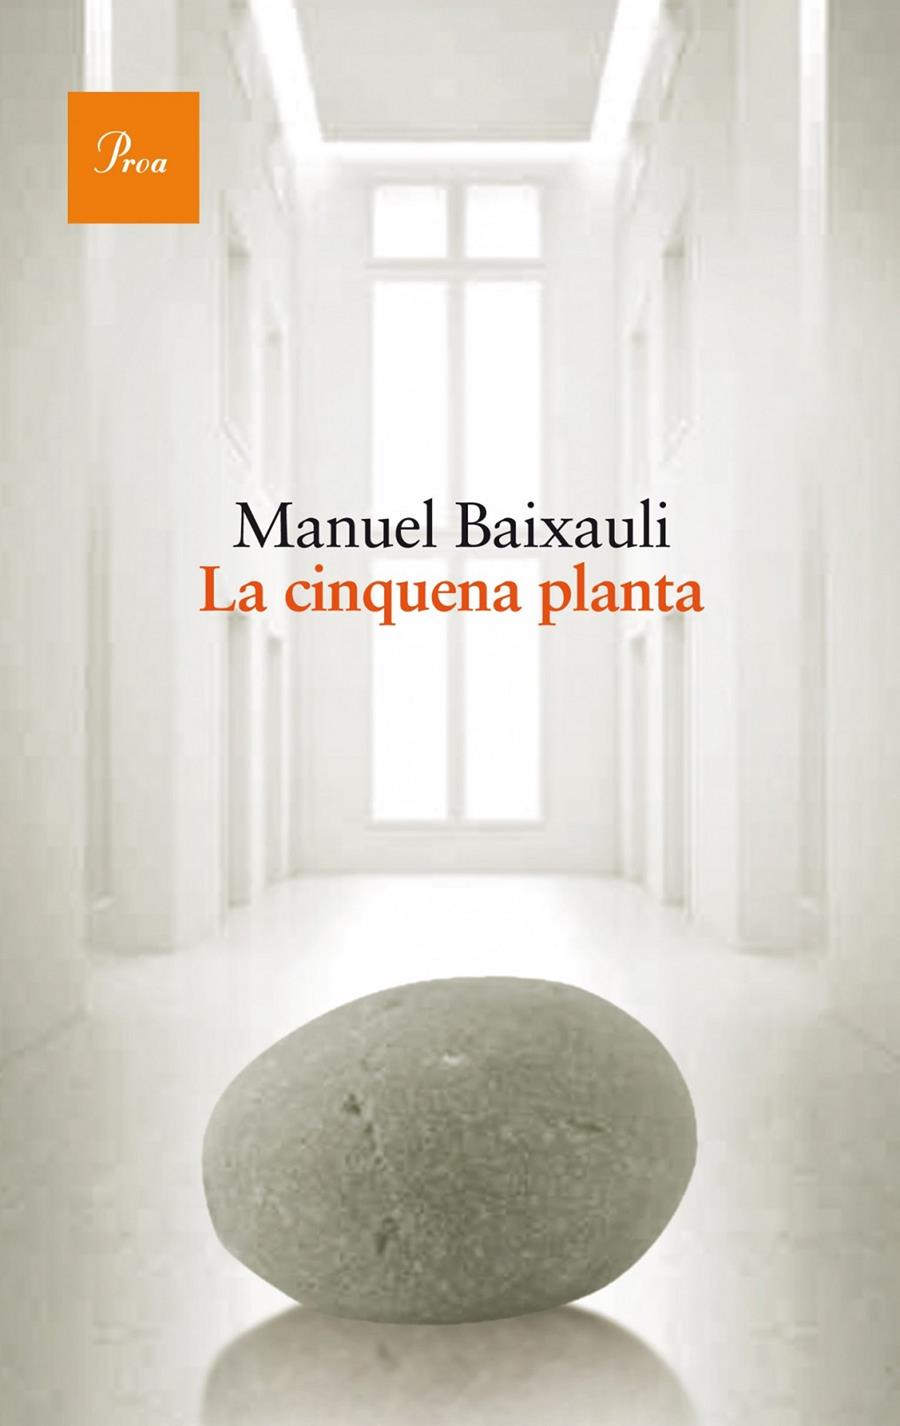 La cinquena planta | Manuel Baixauli Mateu | Cooperativa autogestionària